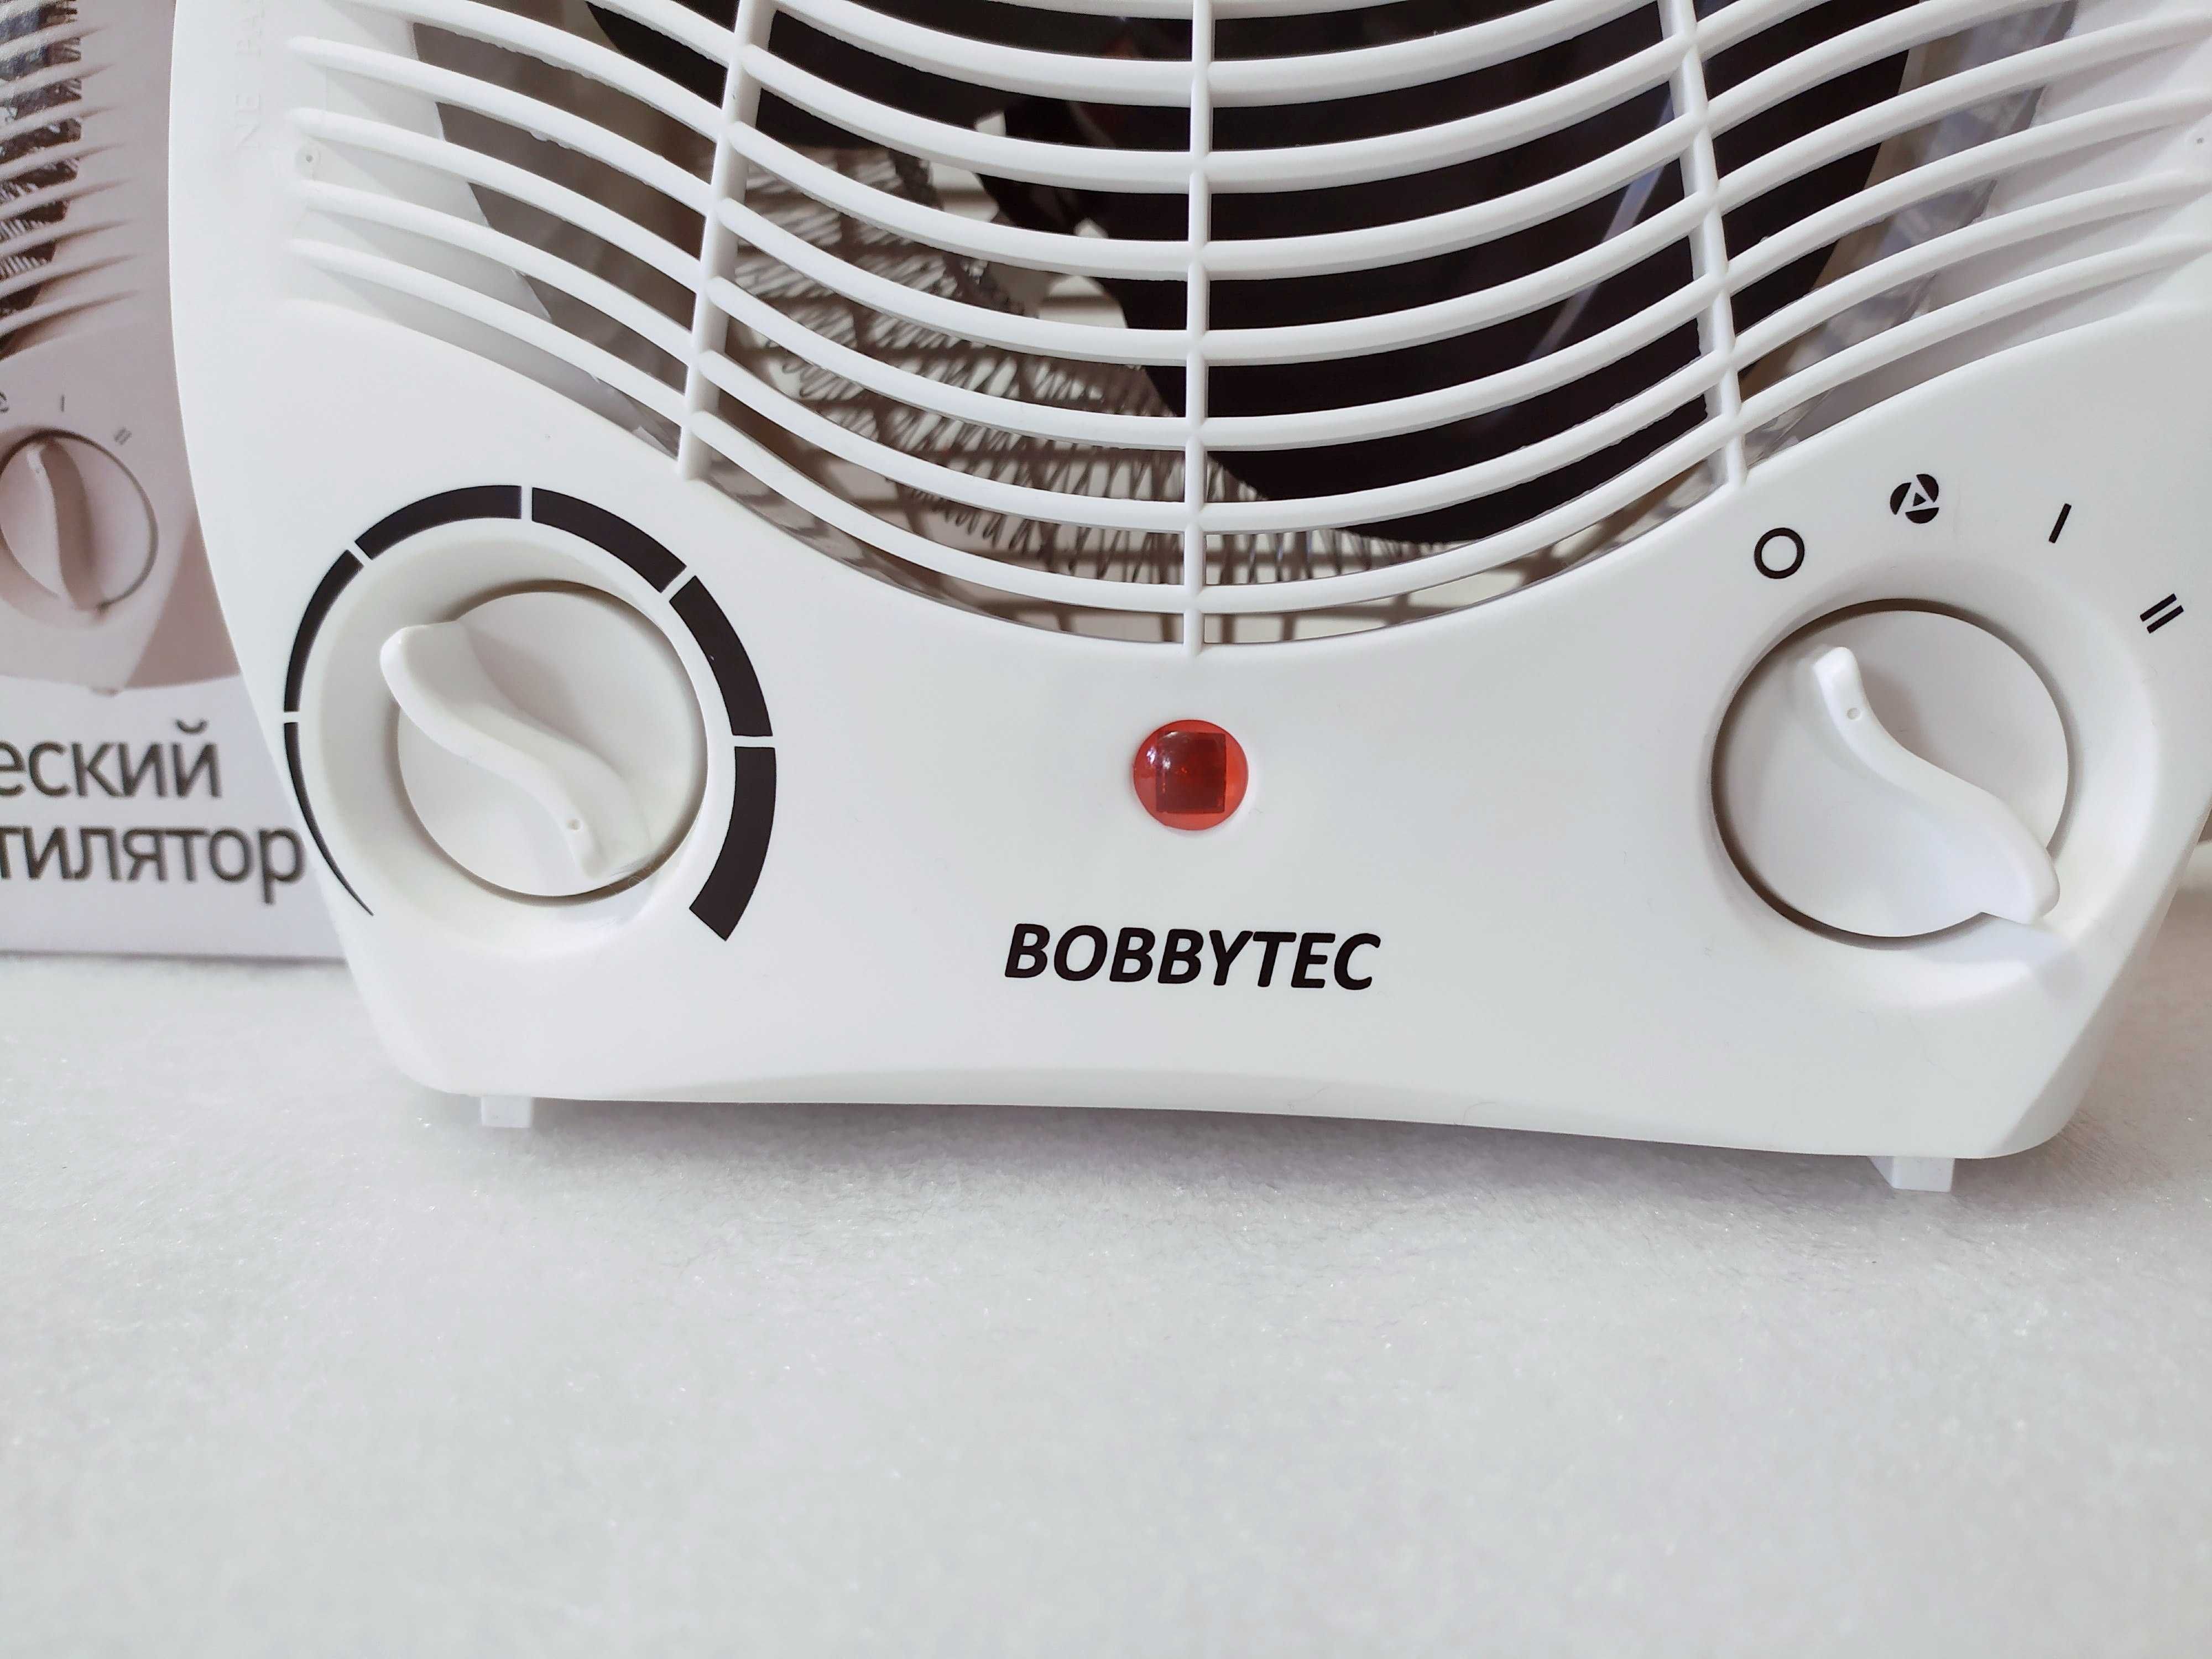 Електро обігрівач-тепловентилятор BOBBYTEC PFH-103 на 2кВт дуйчик